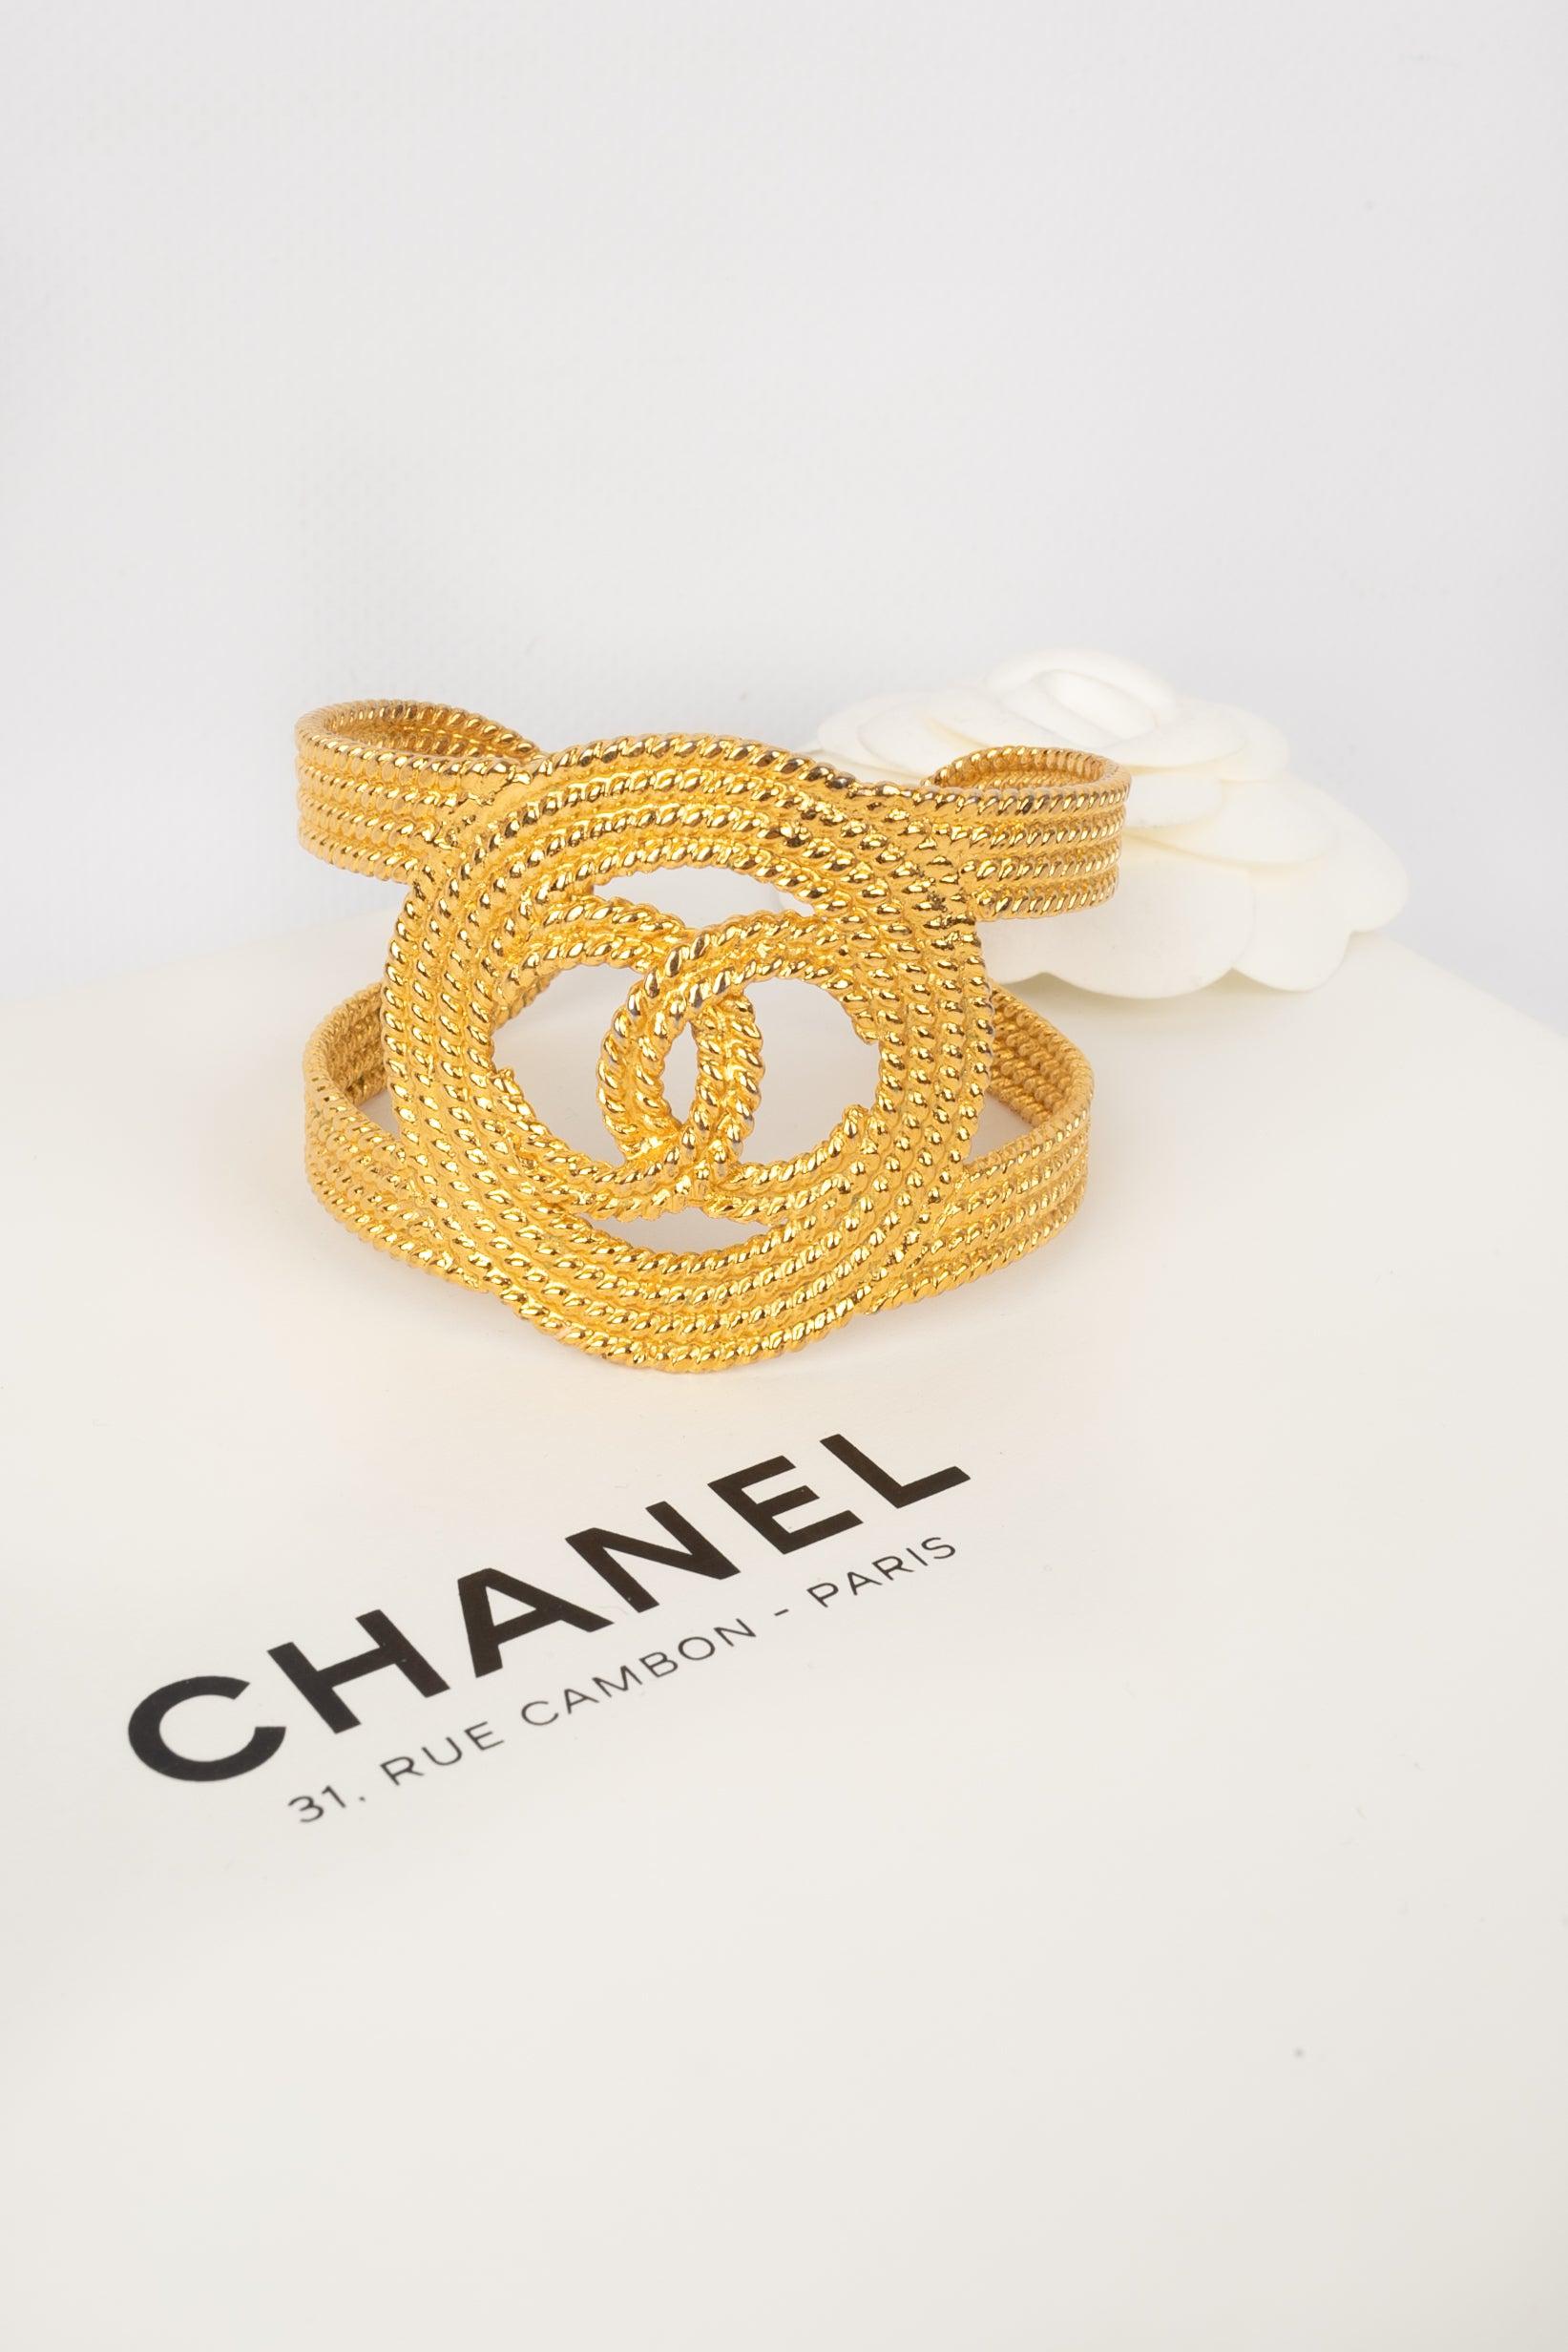 Chanel Openwork Golden Emtal Cuff Bracelet, 2008 For Sale 3